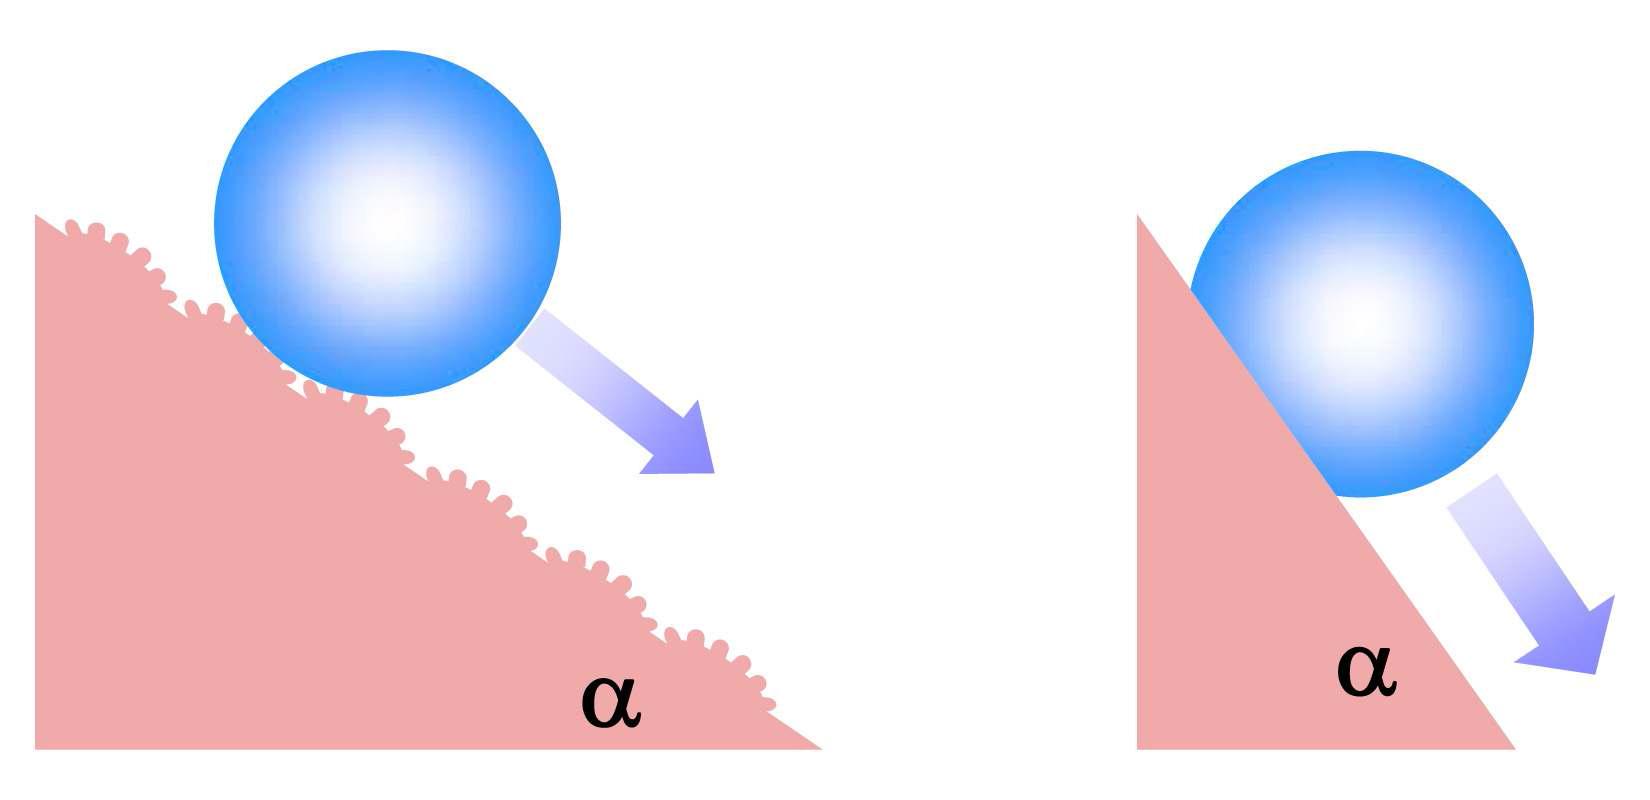 표면 나노구조 및 화학적 특성에 따라 예상되는 sliding angle (α) 변화